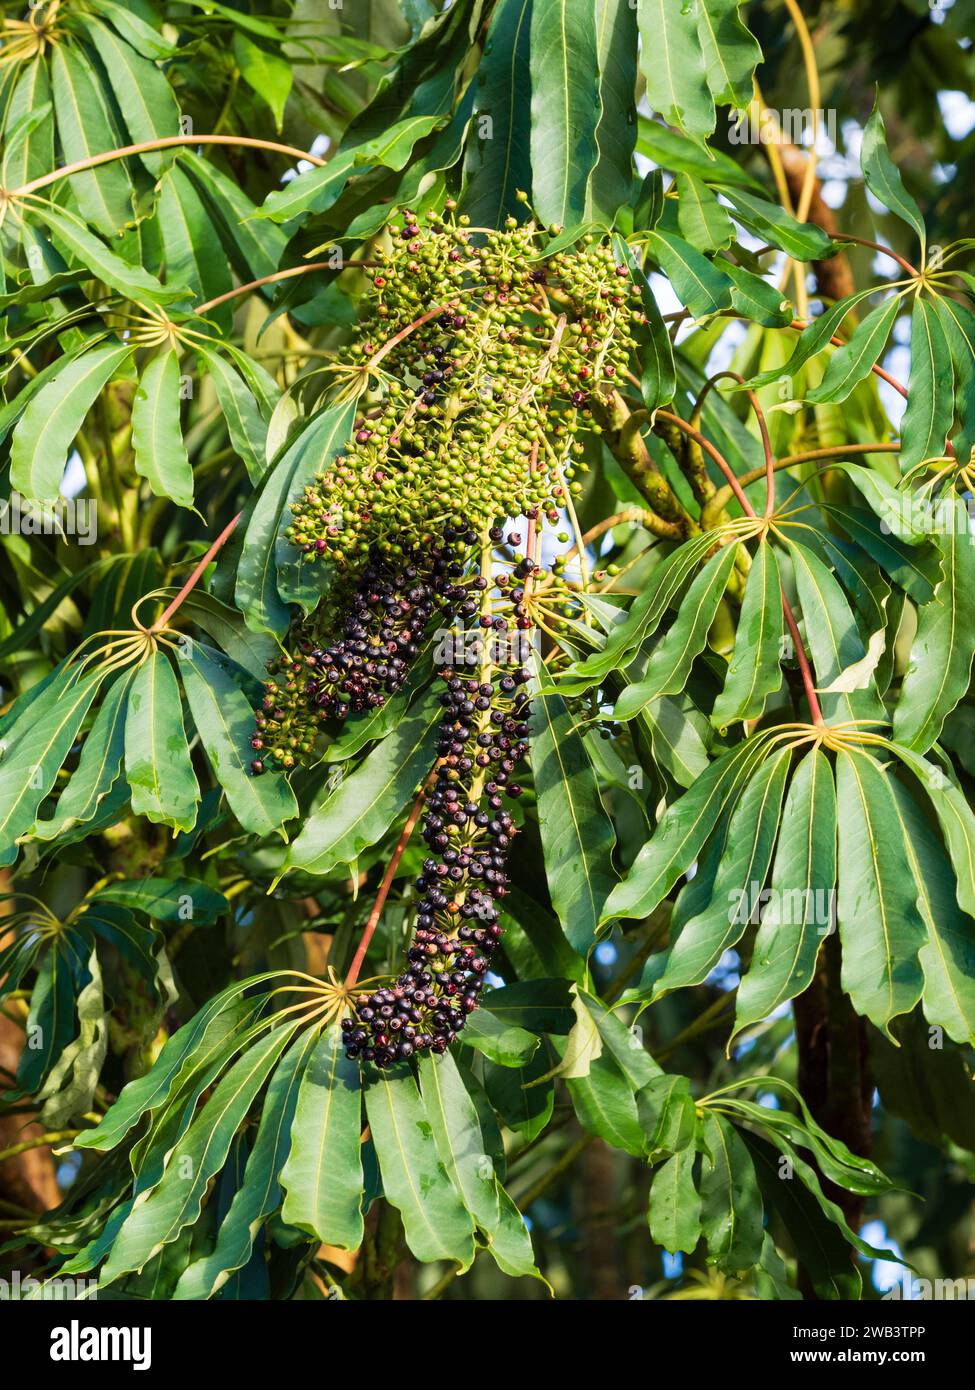 Baies mûres et non mûres parmi le feuillage persistant palmé de l'exotique Schefflera taiwaniana 'Garden House form' arbre Banque D'Images